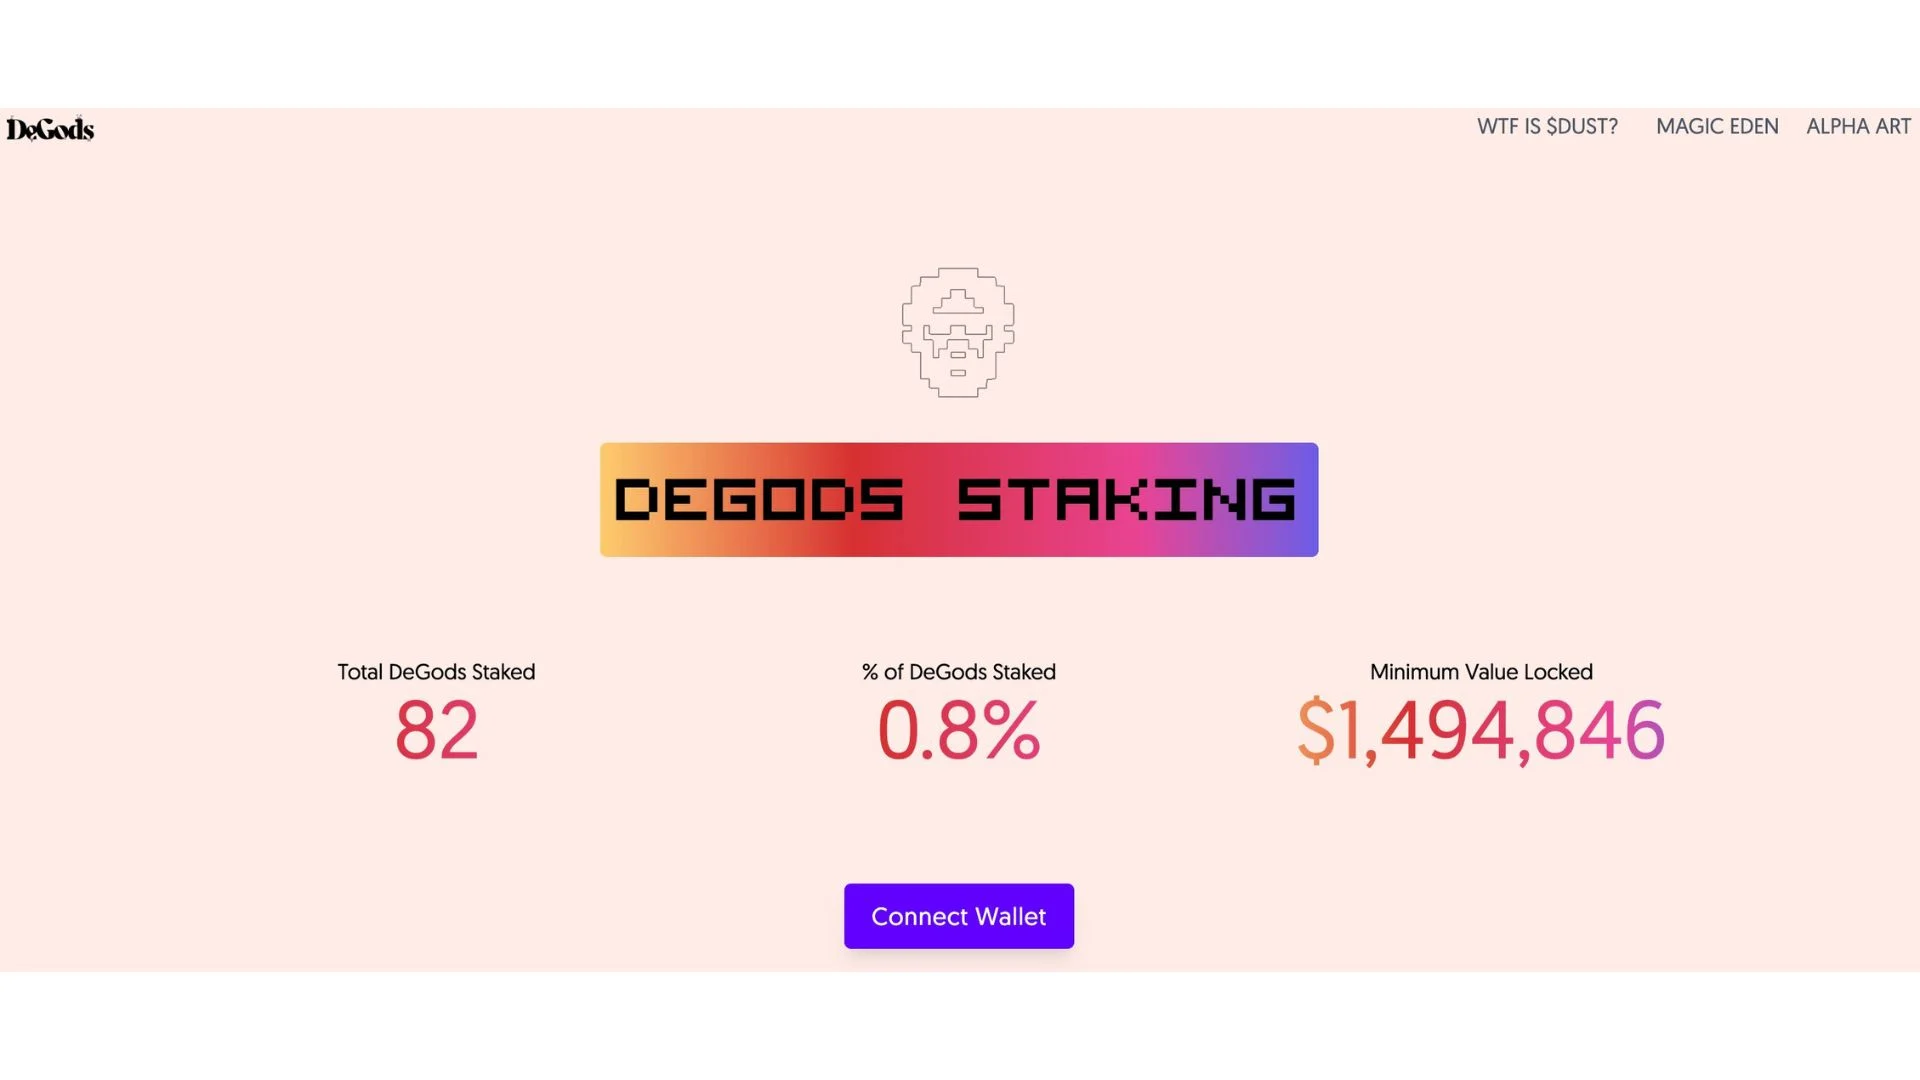 degods-staking